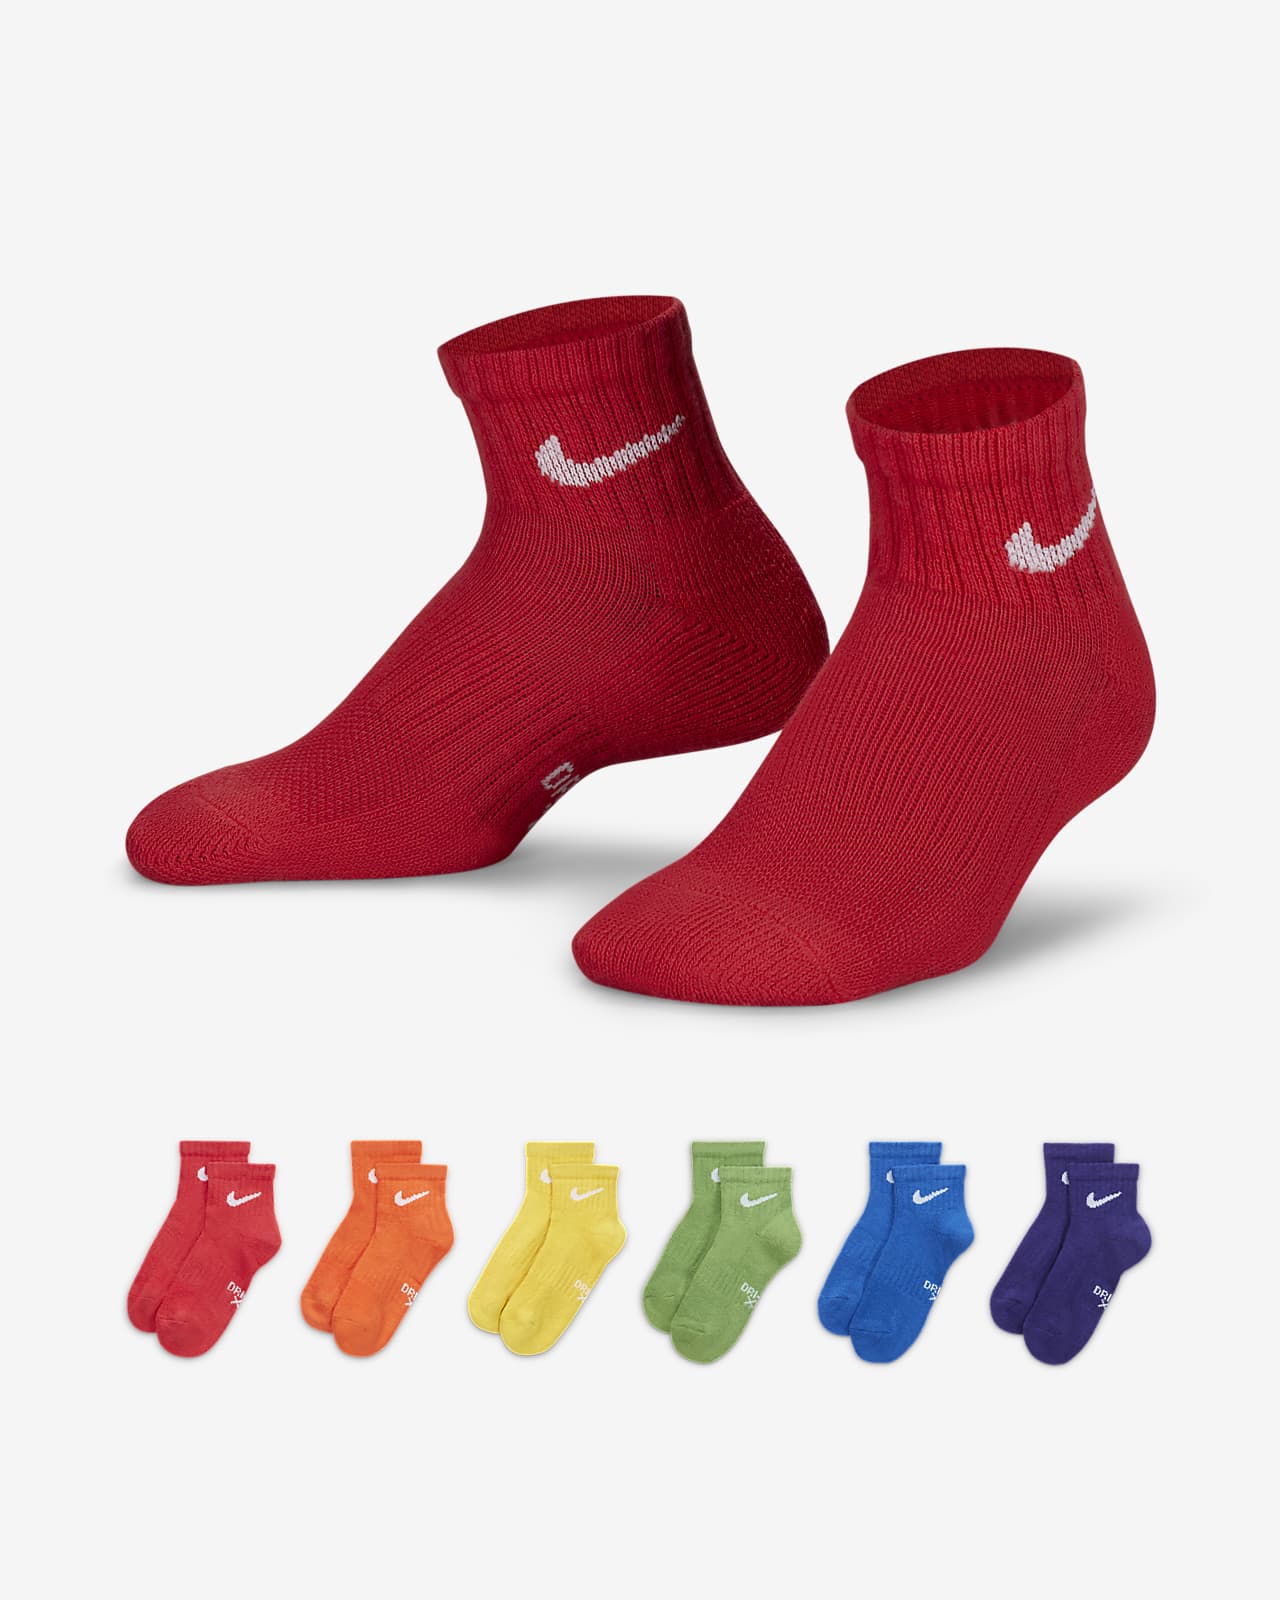 Socquettes Nike Dri Fit pour enfant (lot de 6)